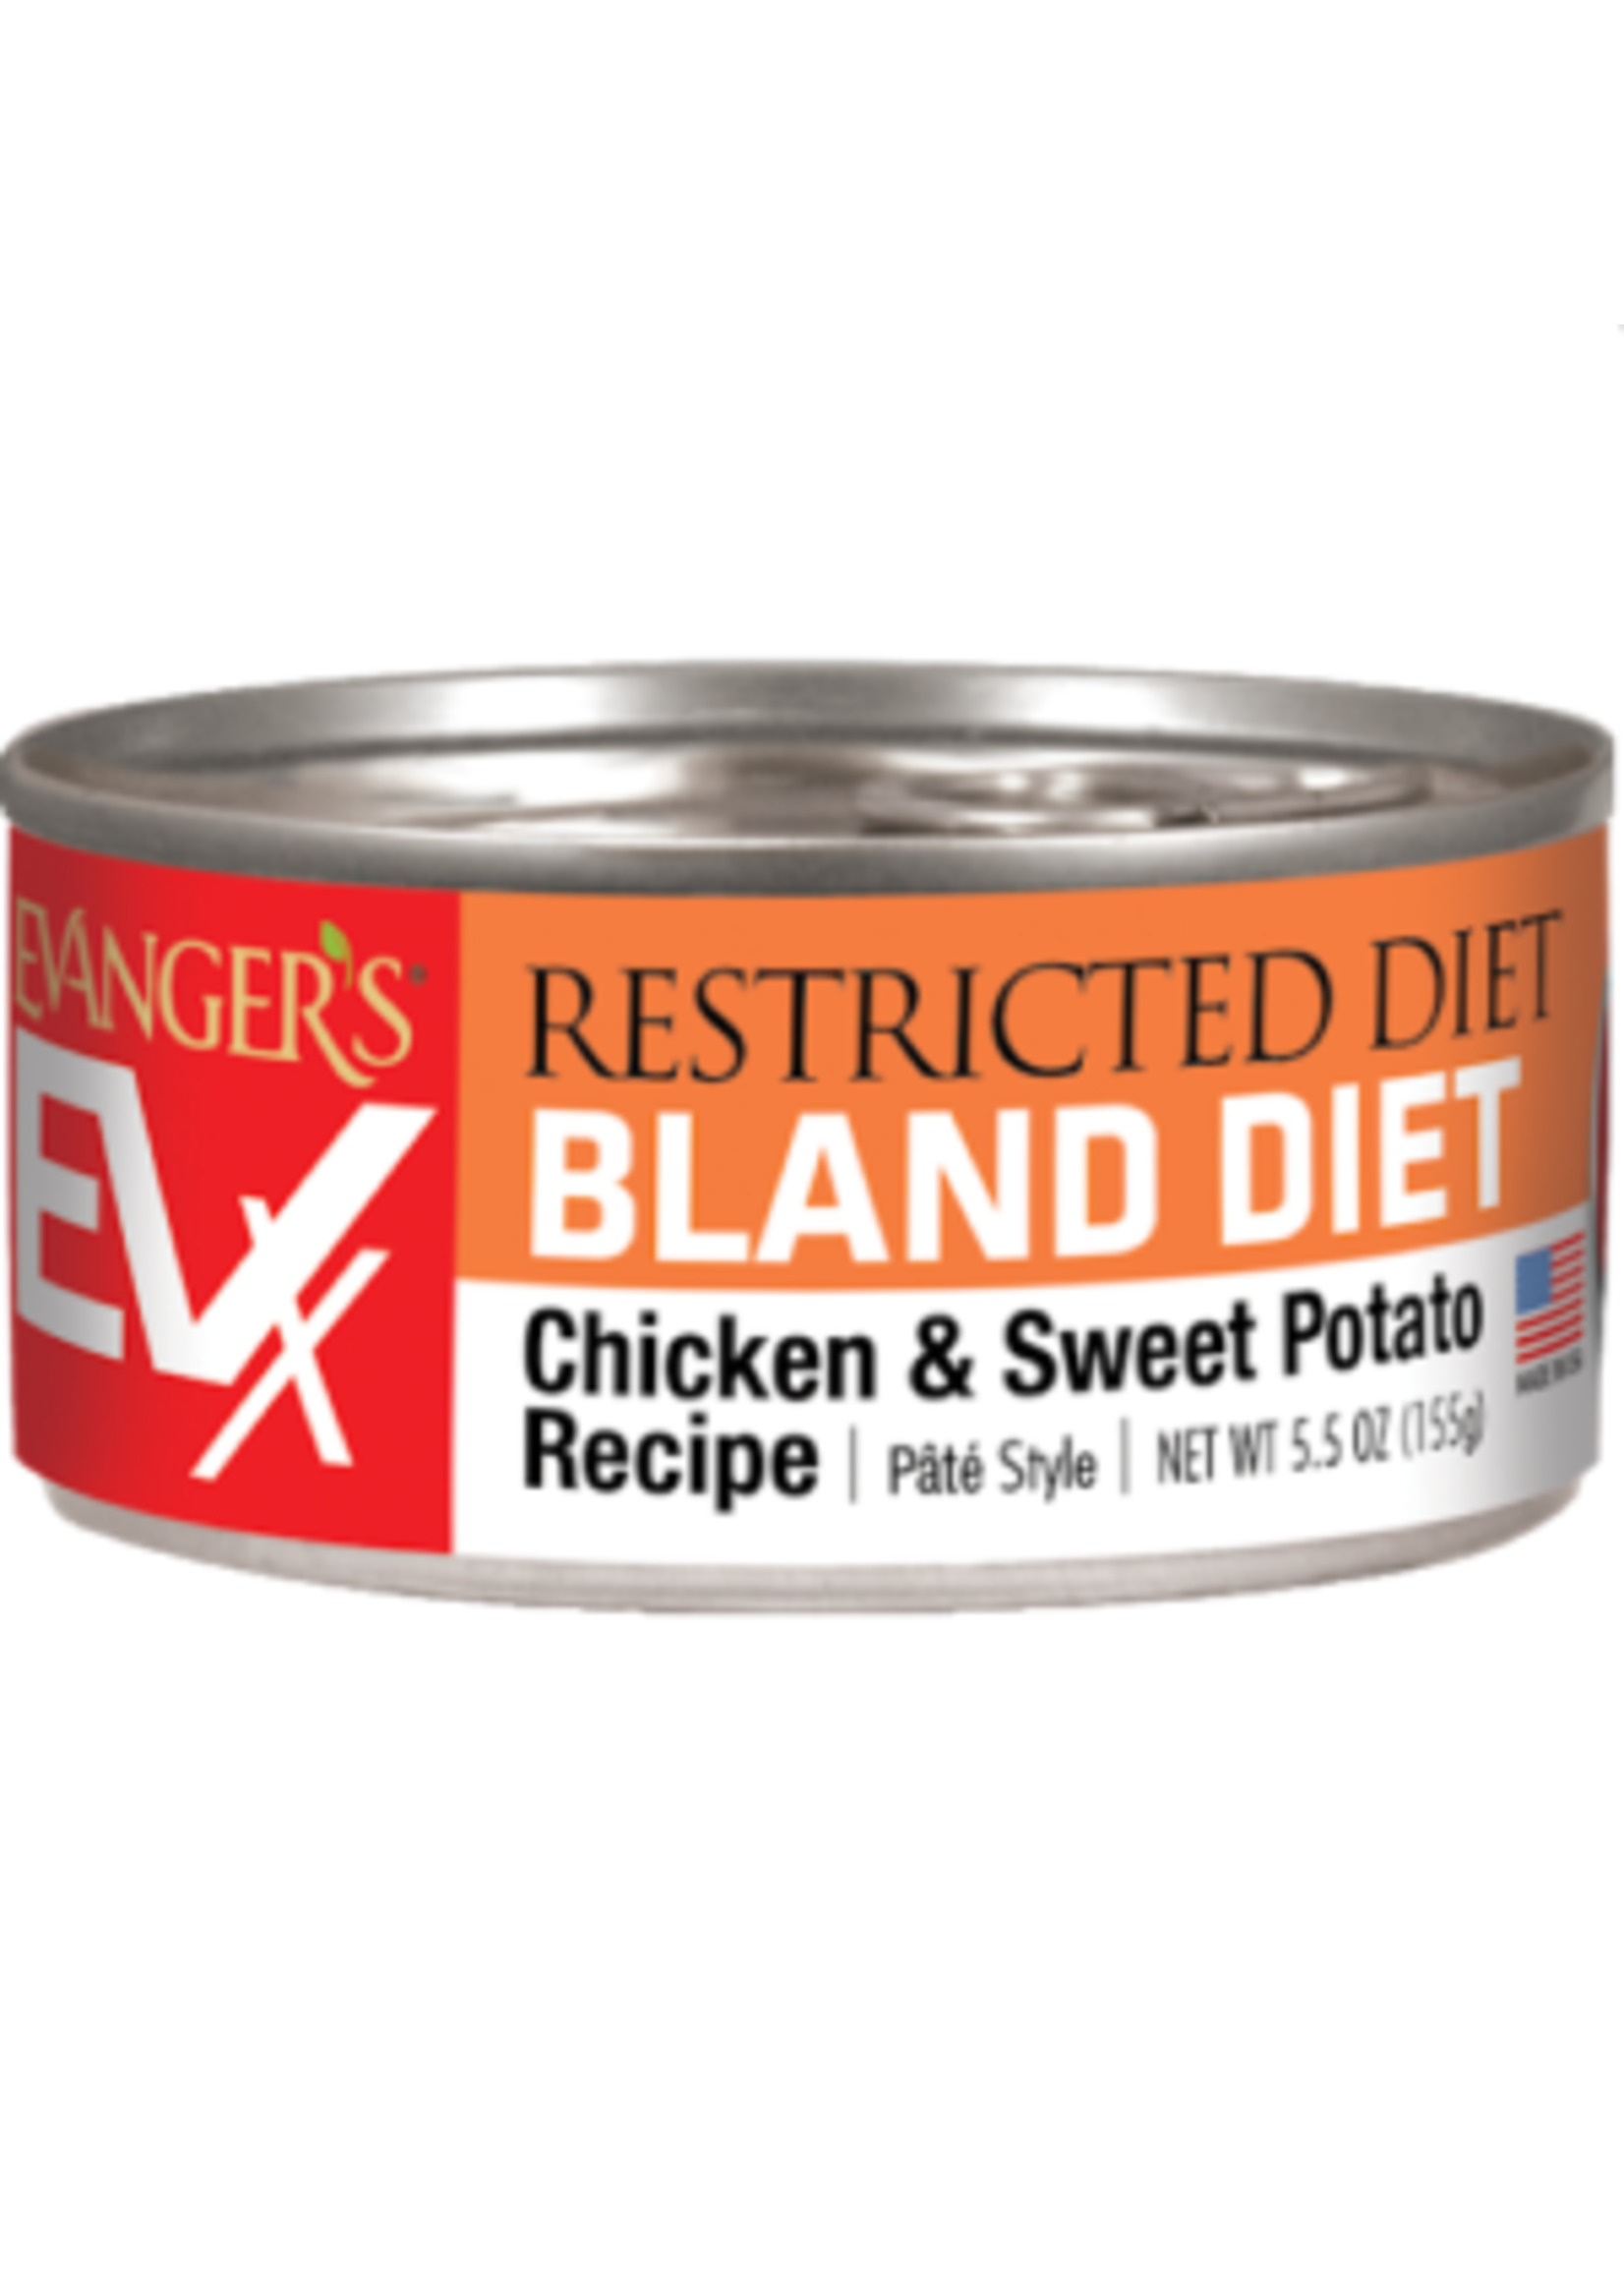 Evanger's Evanger's EVX Restricted Diet Bland Diet Cat Food, 5.5oz Can